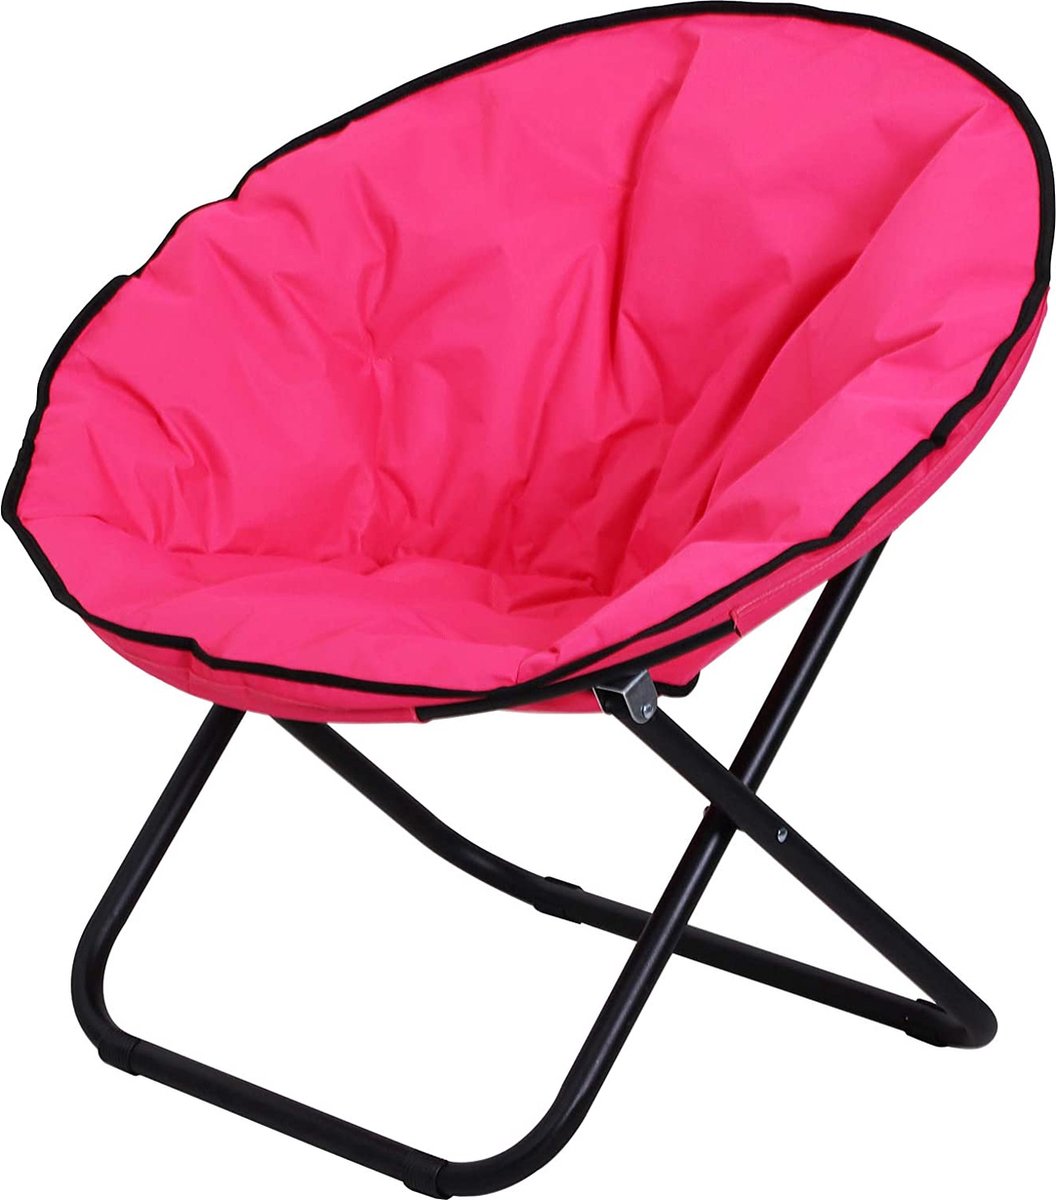 CGPN klapfauteuil klapstoel campingstoel tuinstoel gestoffeerde stoel lounge stoel opvouwbaar metaal + oxford stof roze 80 x 80 x 75 cm